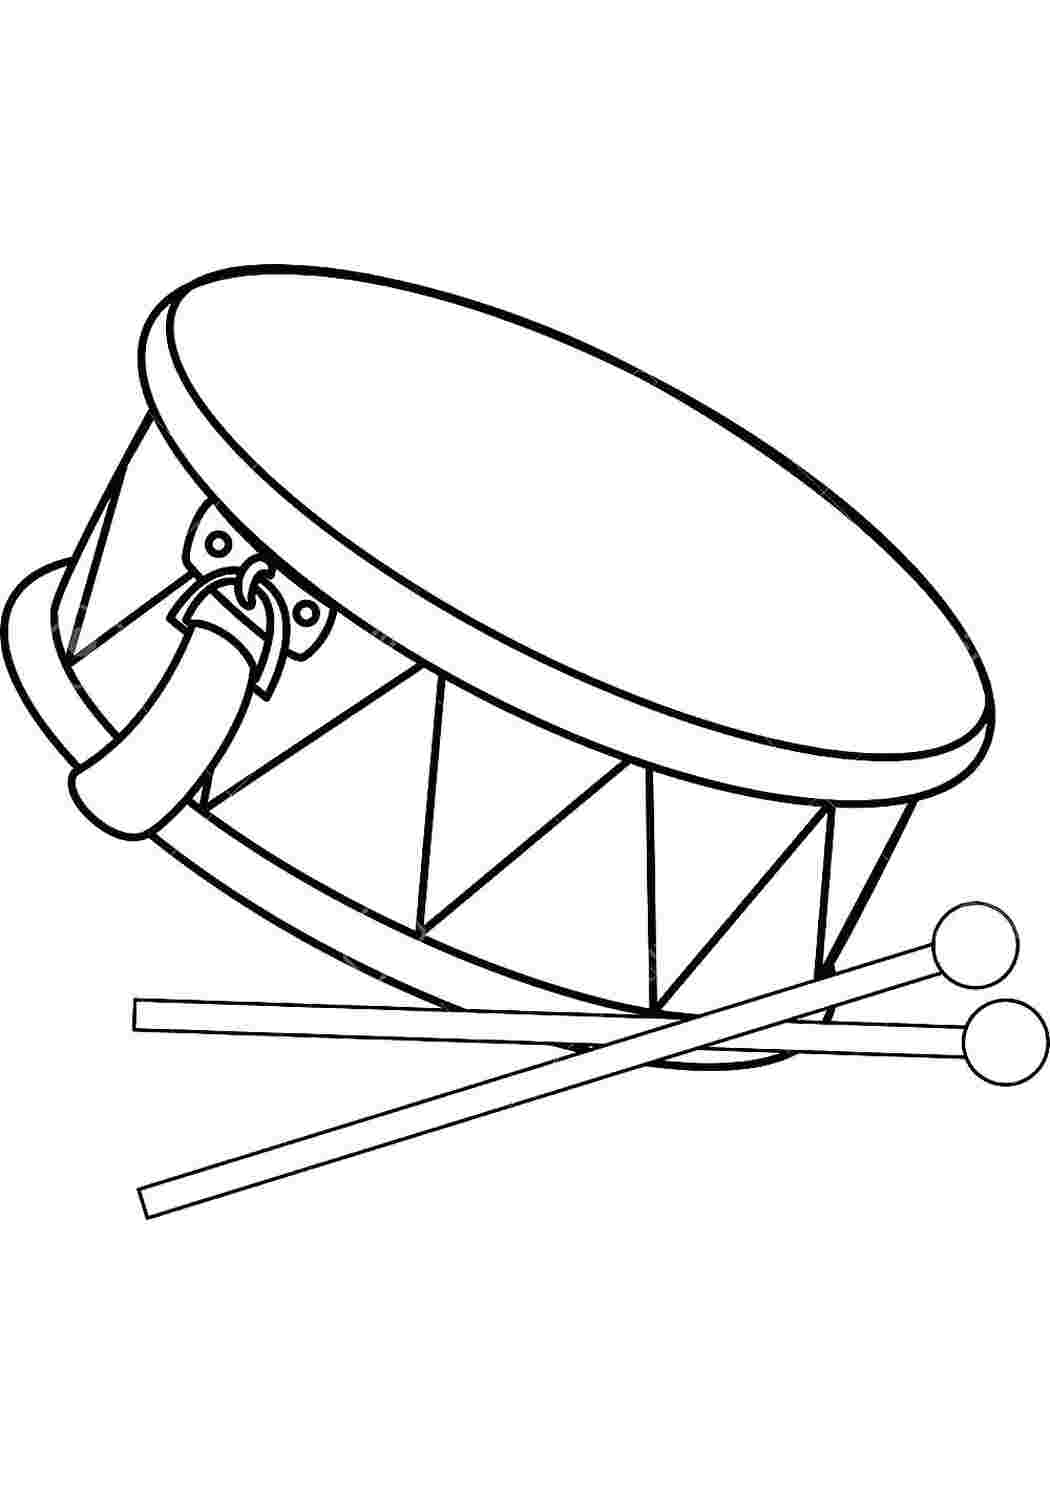 Картинка барабана для детей